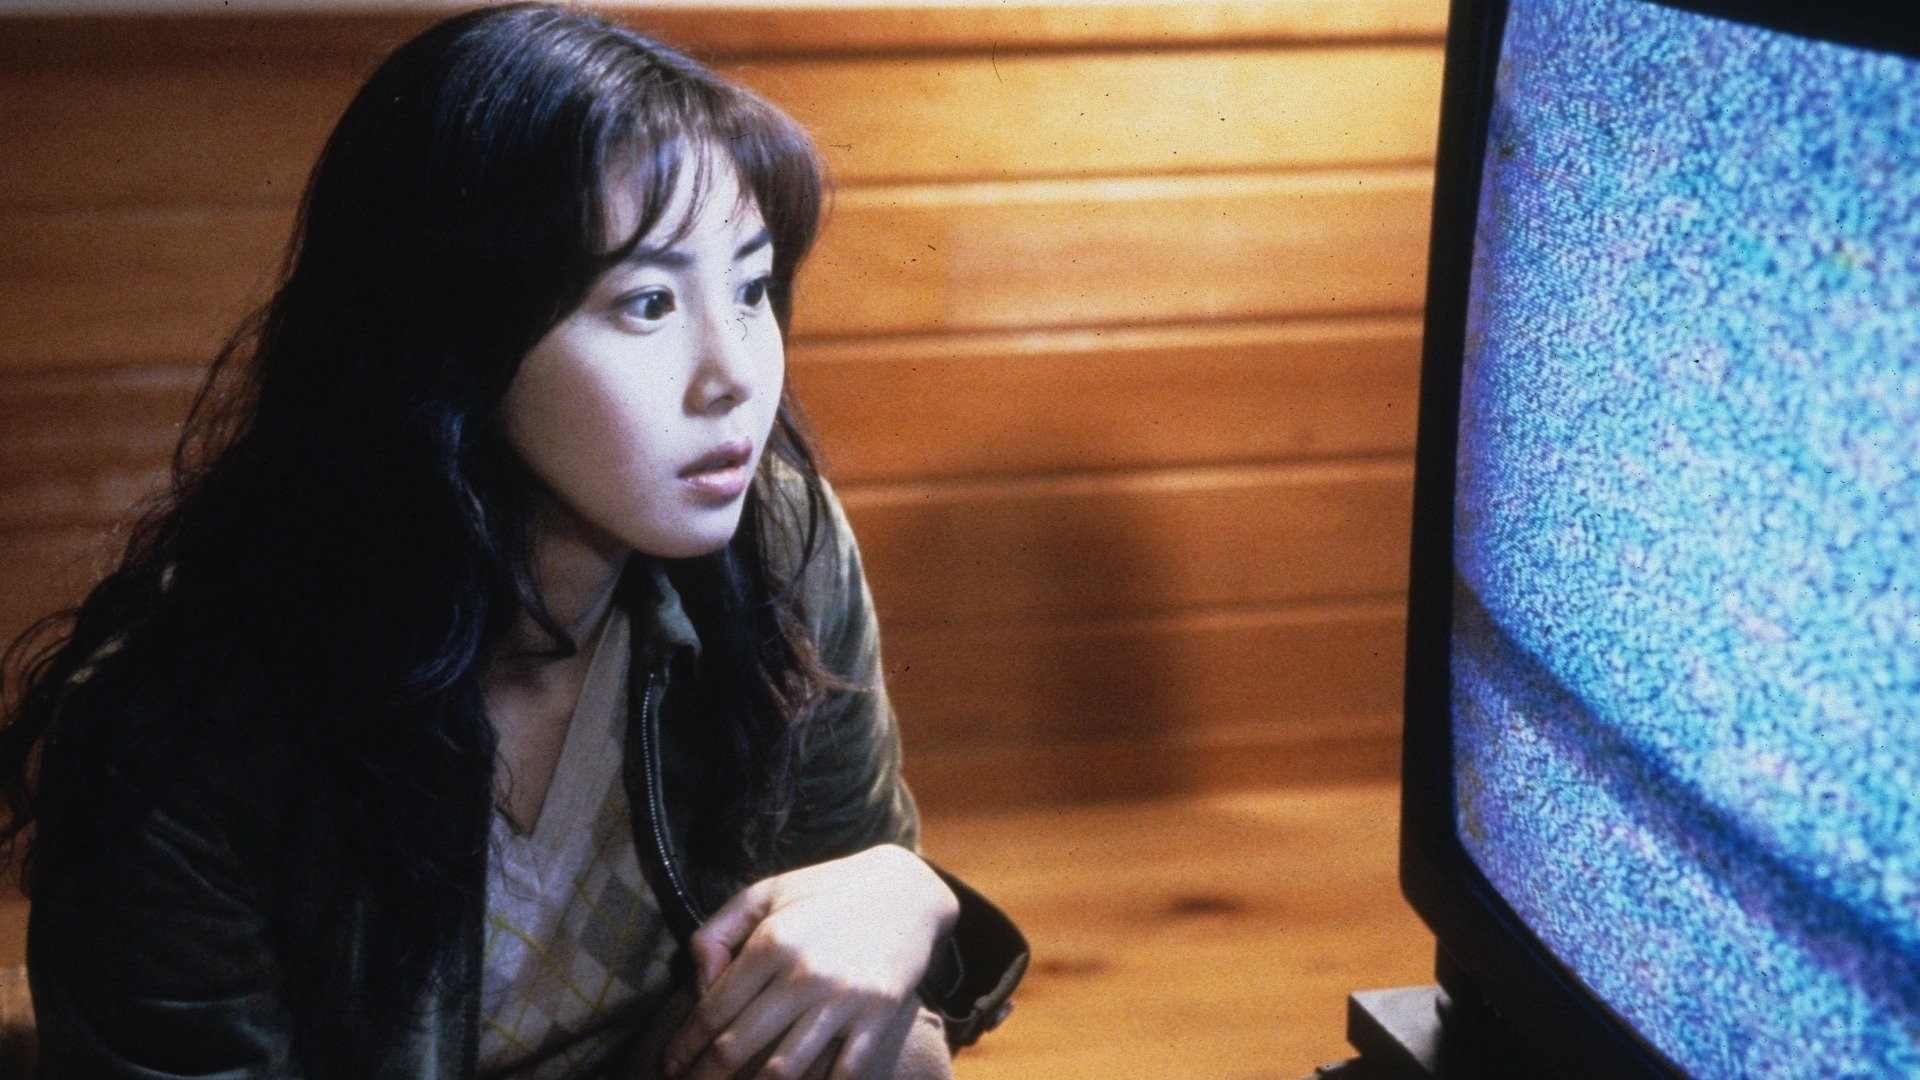 Nanako Matsushima staring at television static.